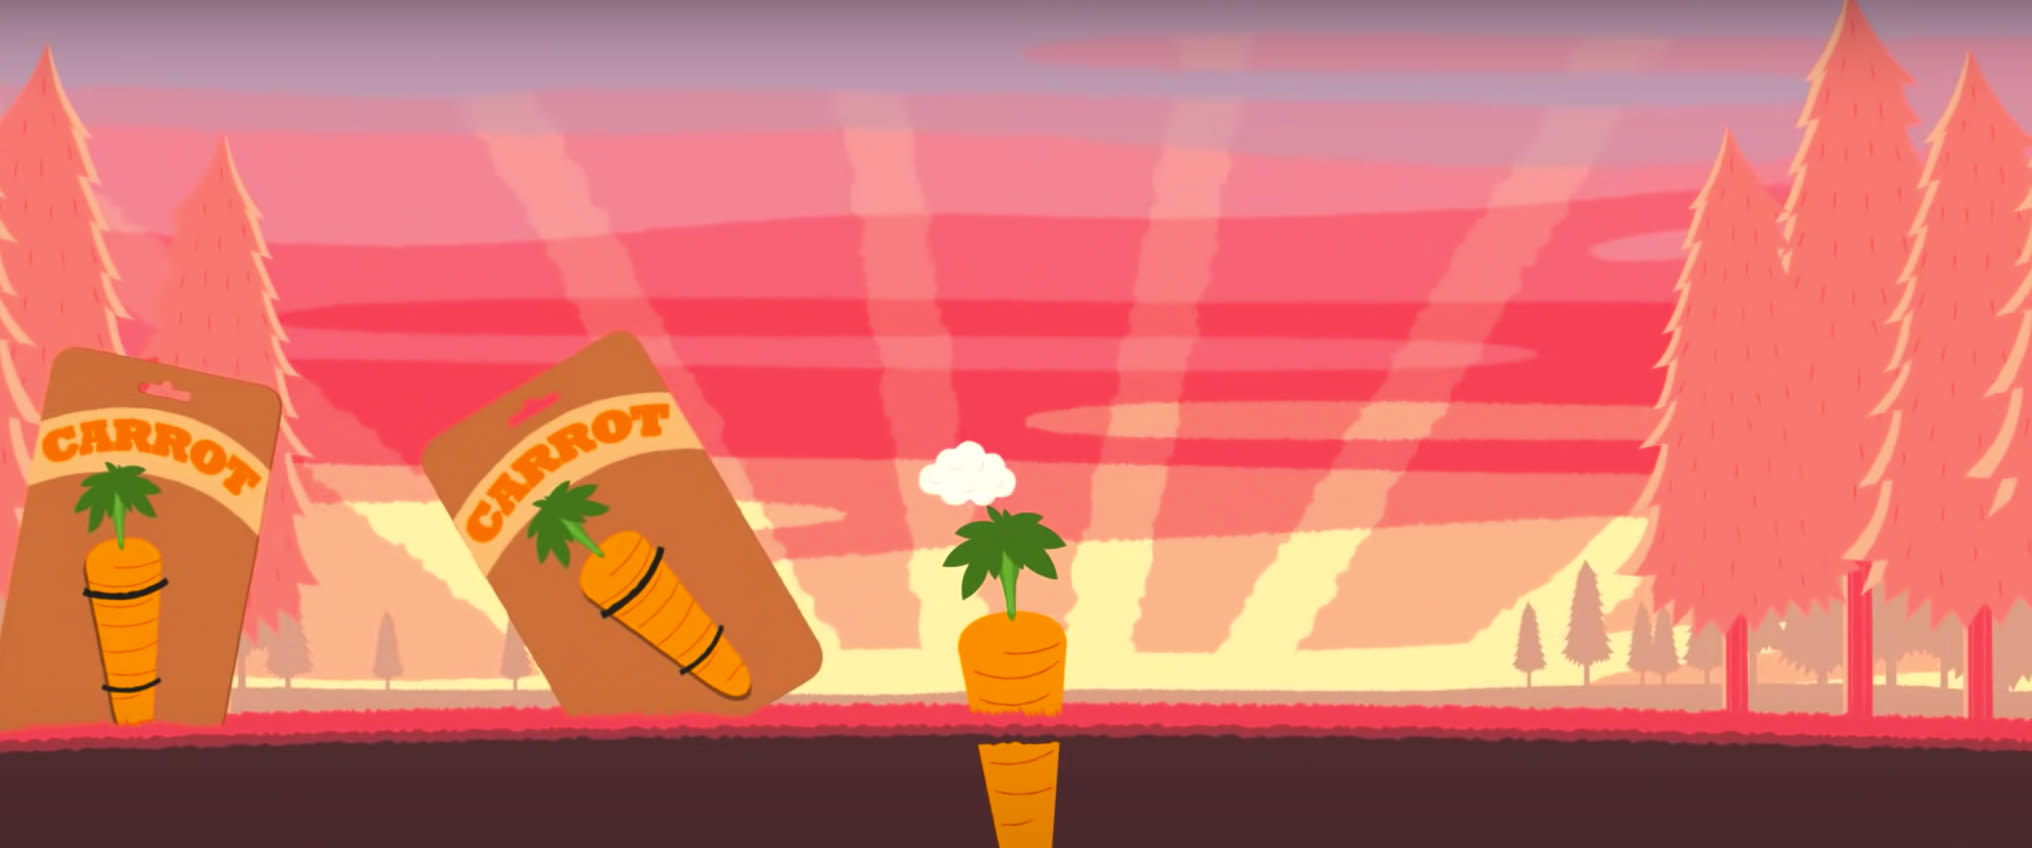 Illustration of carrots in soil